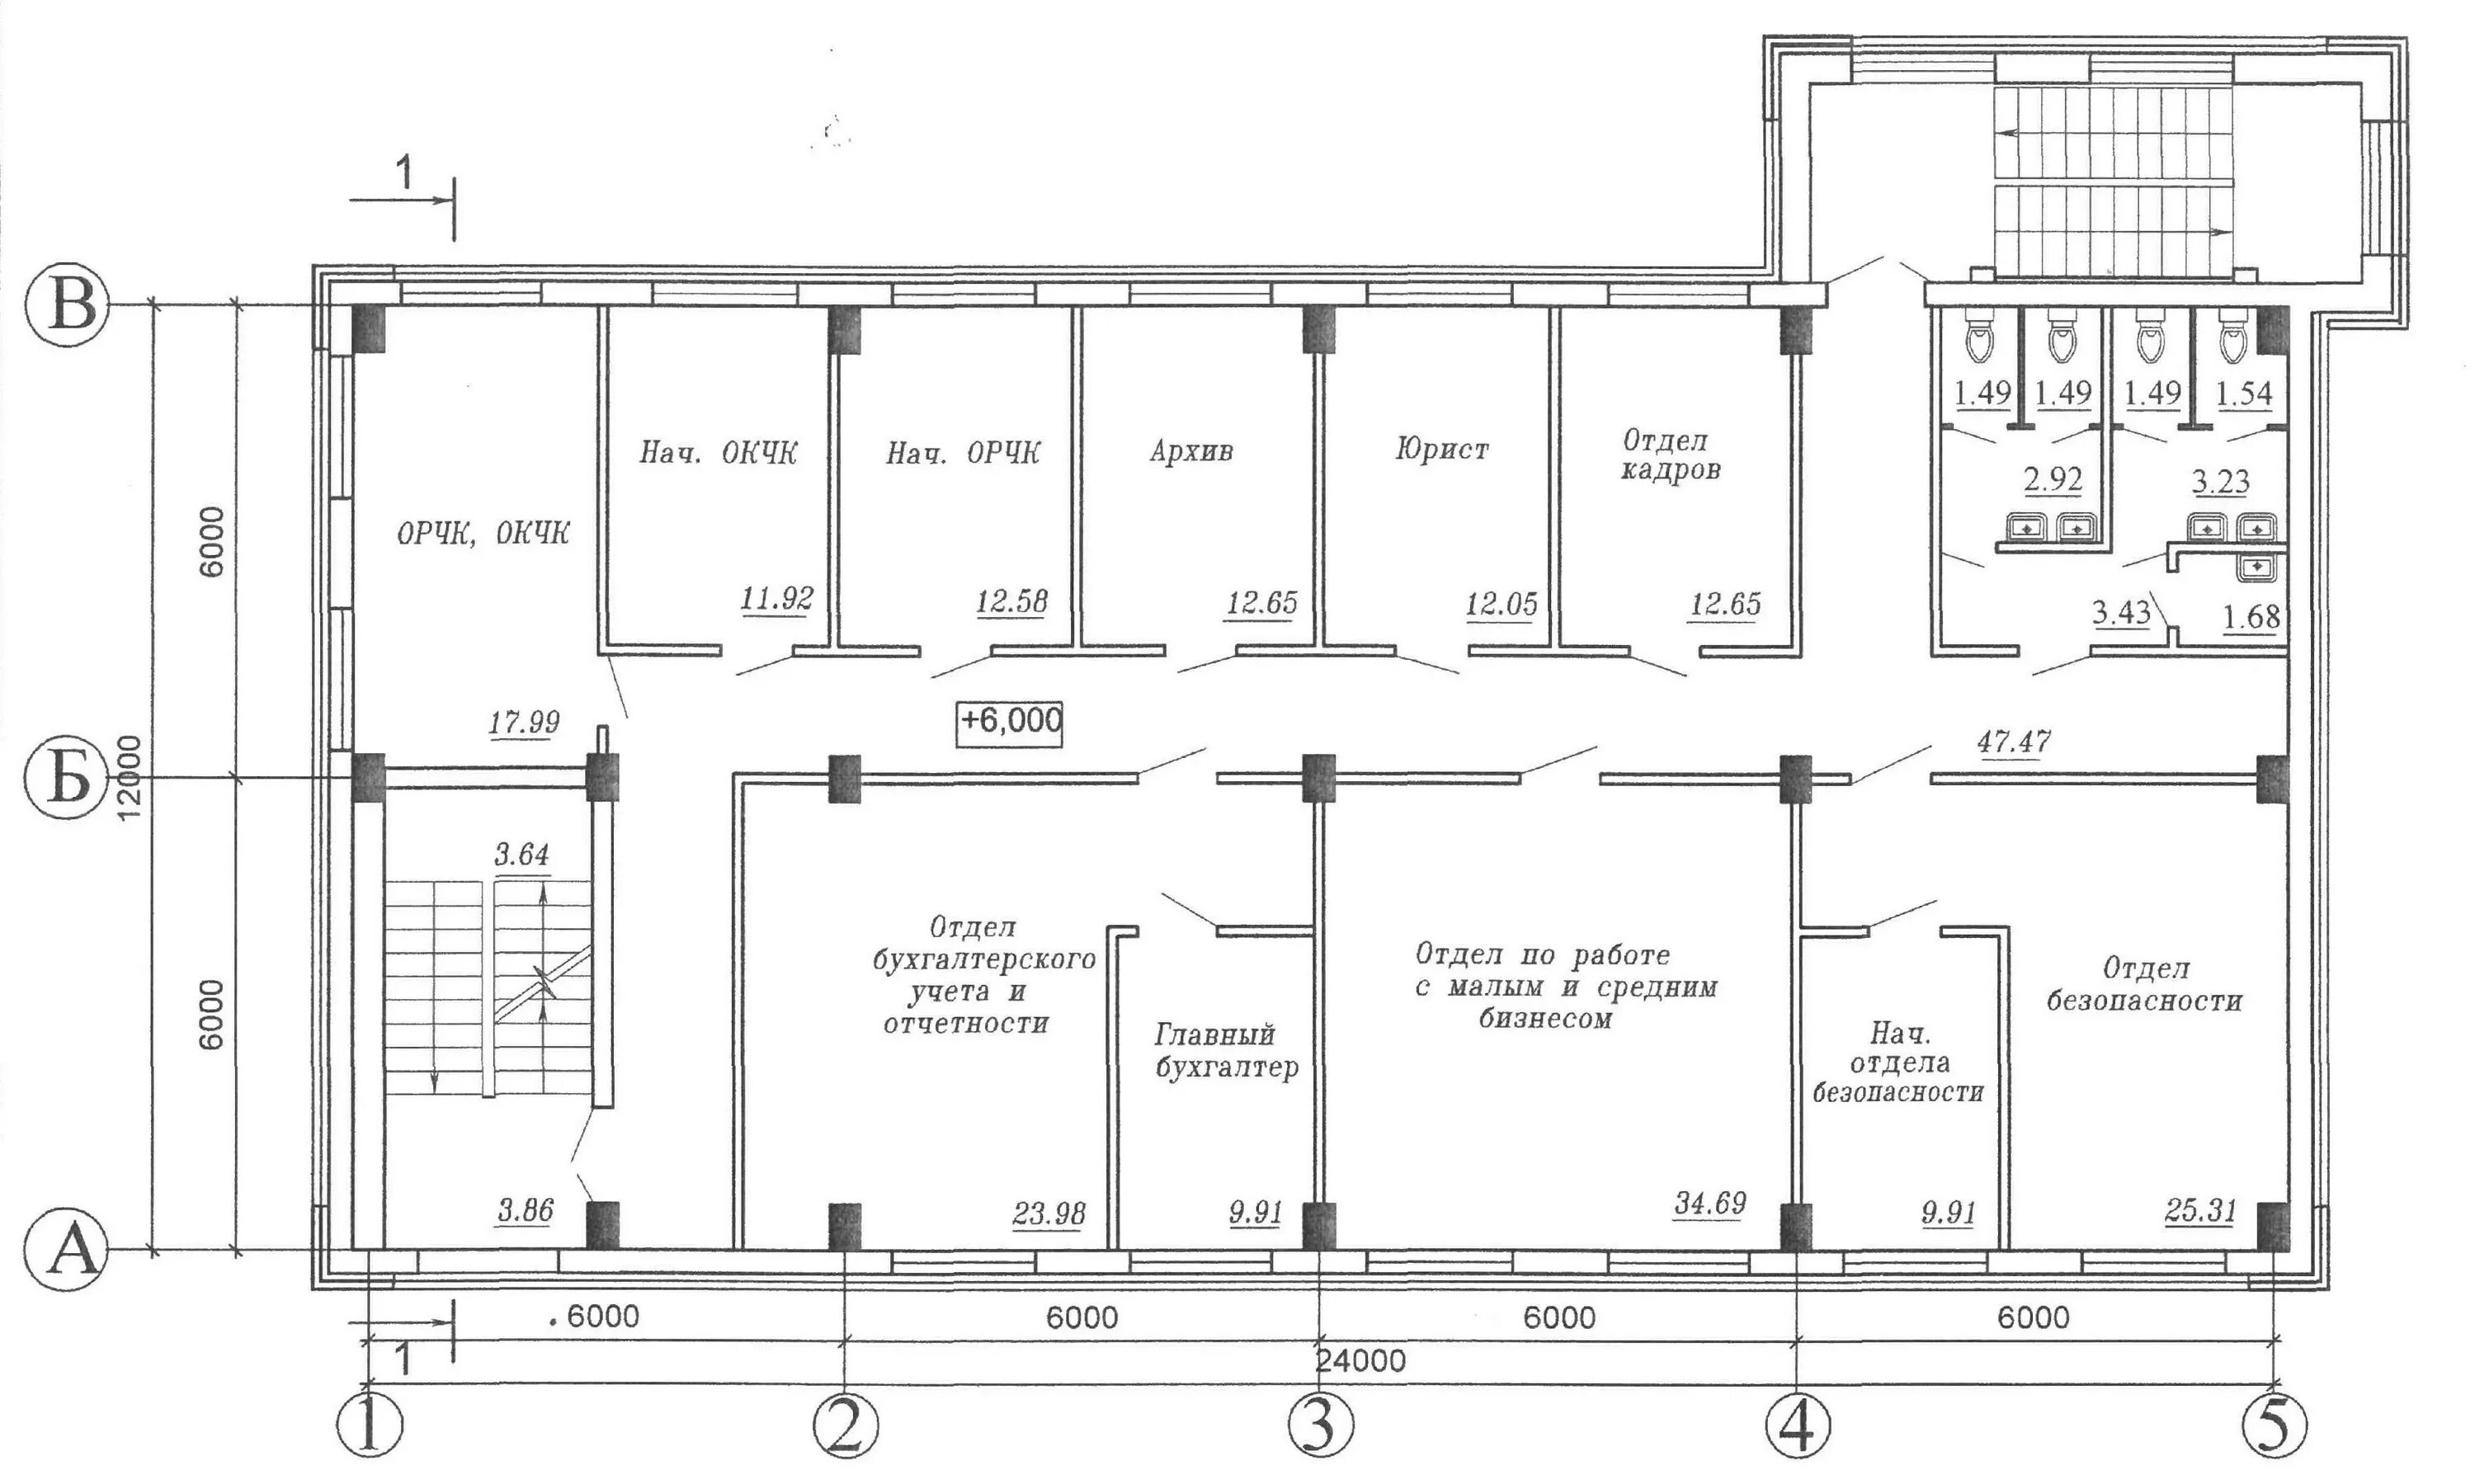 Офис одноэтажный чертеж. План здания офиса одноэтажного с размерами чертеж. Схема офисного помещения предприятия. План одноэтажного административного здания чертеж.